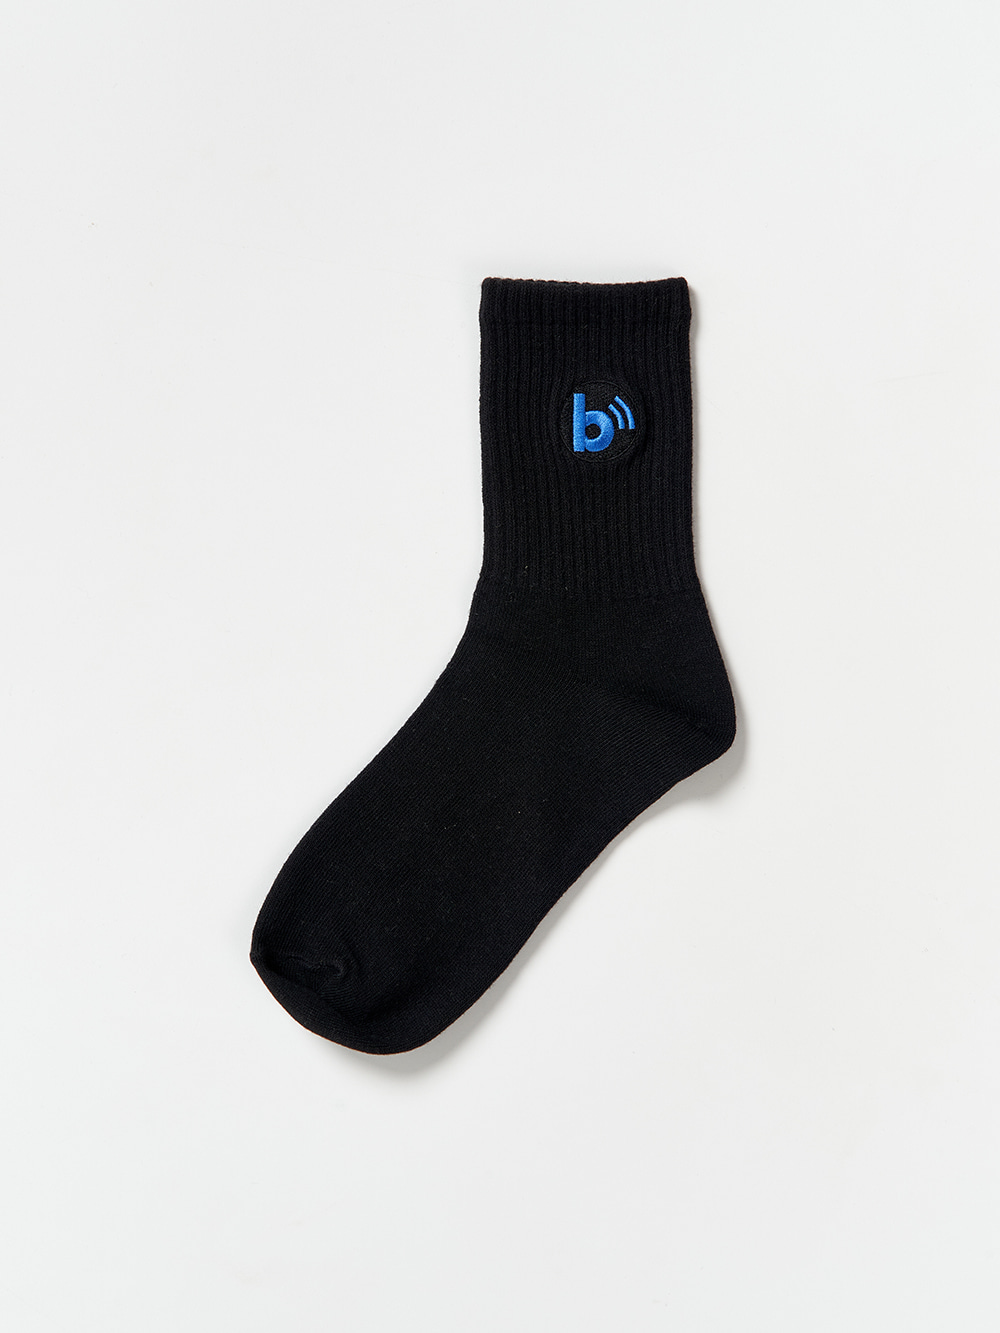 B Logo Basic Socks_Black